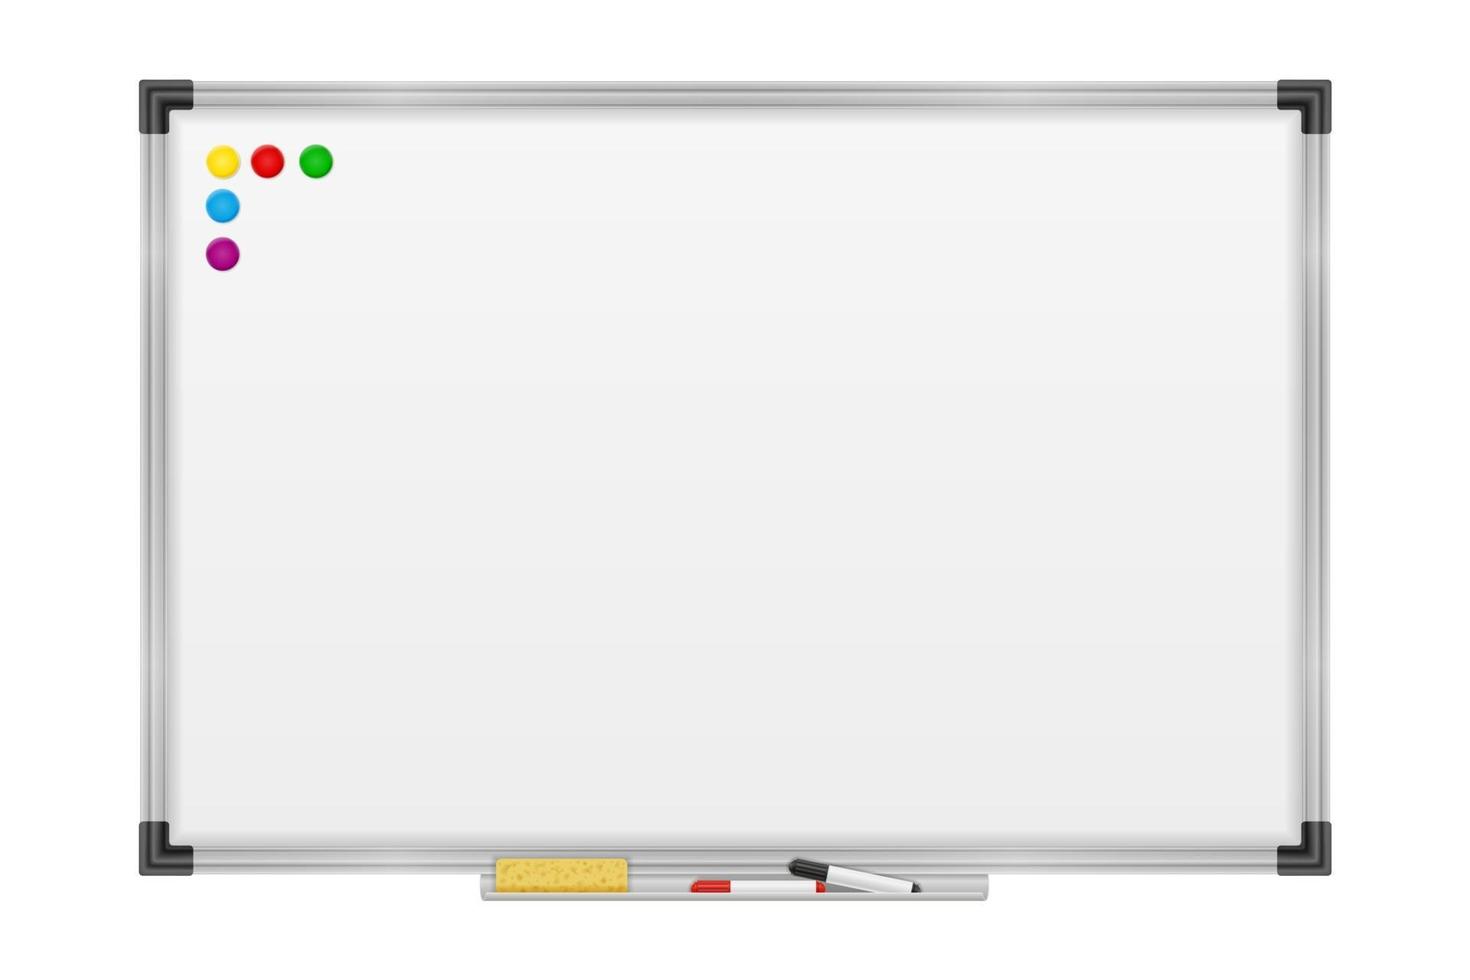 lege whiteboard magnetische marker voor presentaties training en opleiding voorraad vectorillustratie geïsoleerd op een witte achtergrond vector